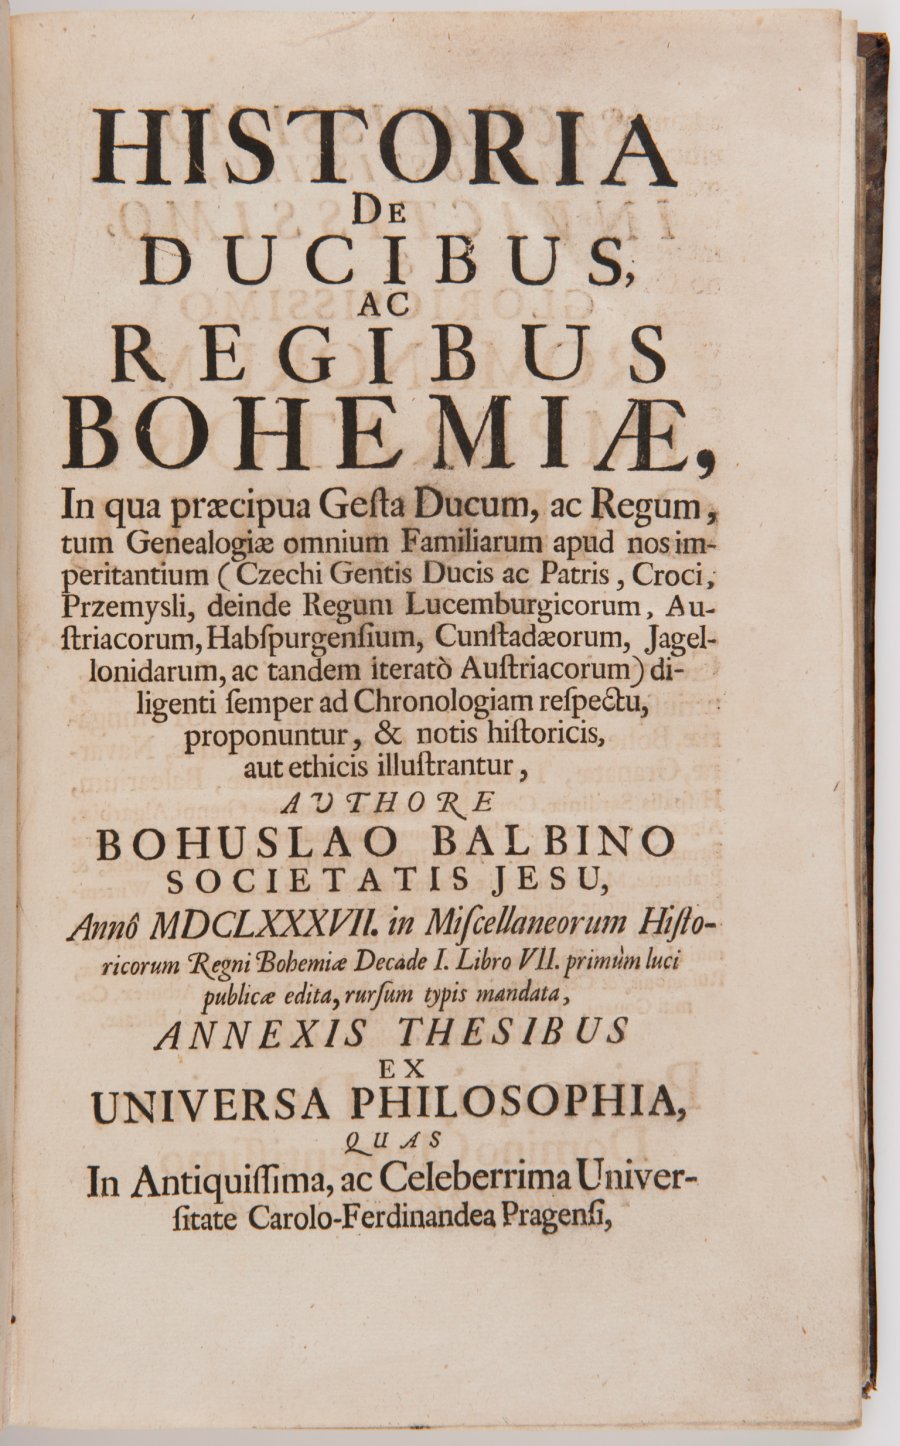 HISTORIA DE DUCIBUS, AC REGIBUS BOHEMIAE (Geschichte des Herzogtums und Königreichs Böhmen)